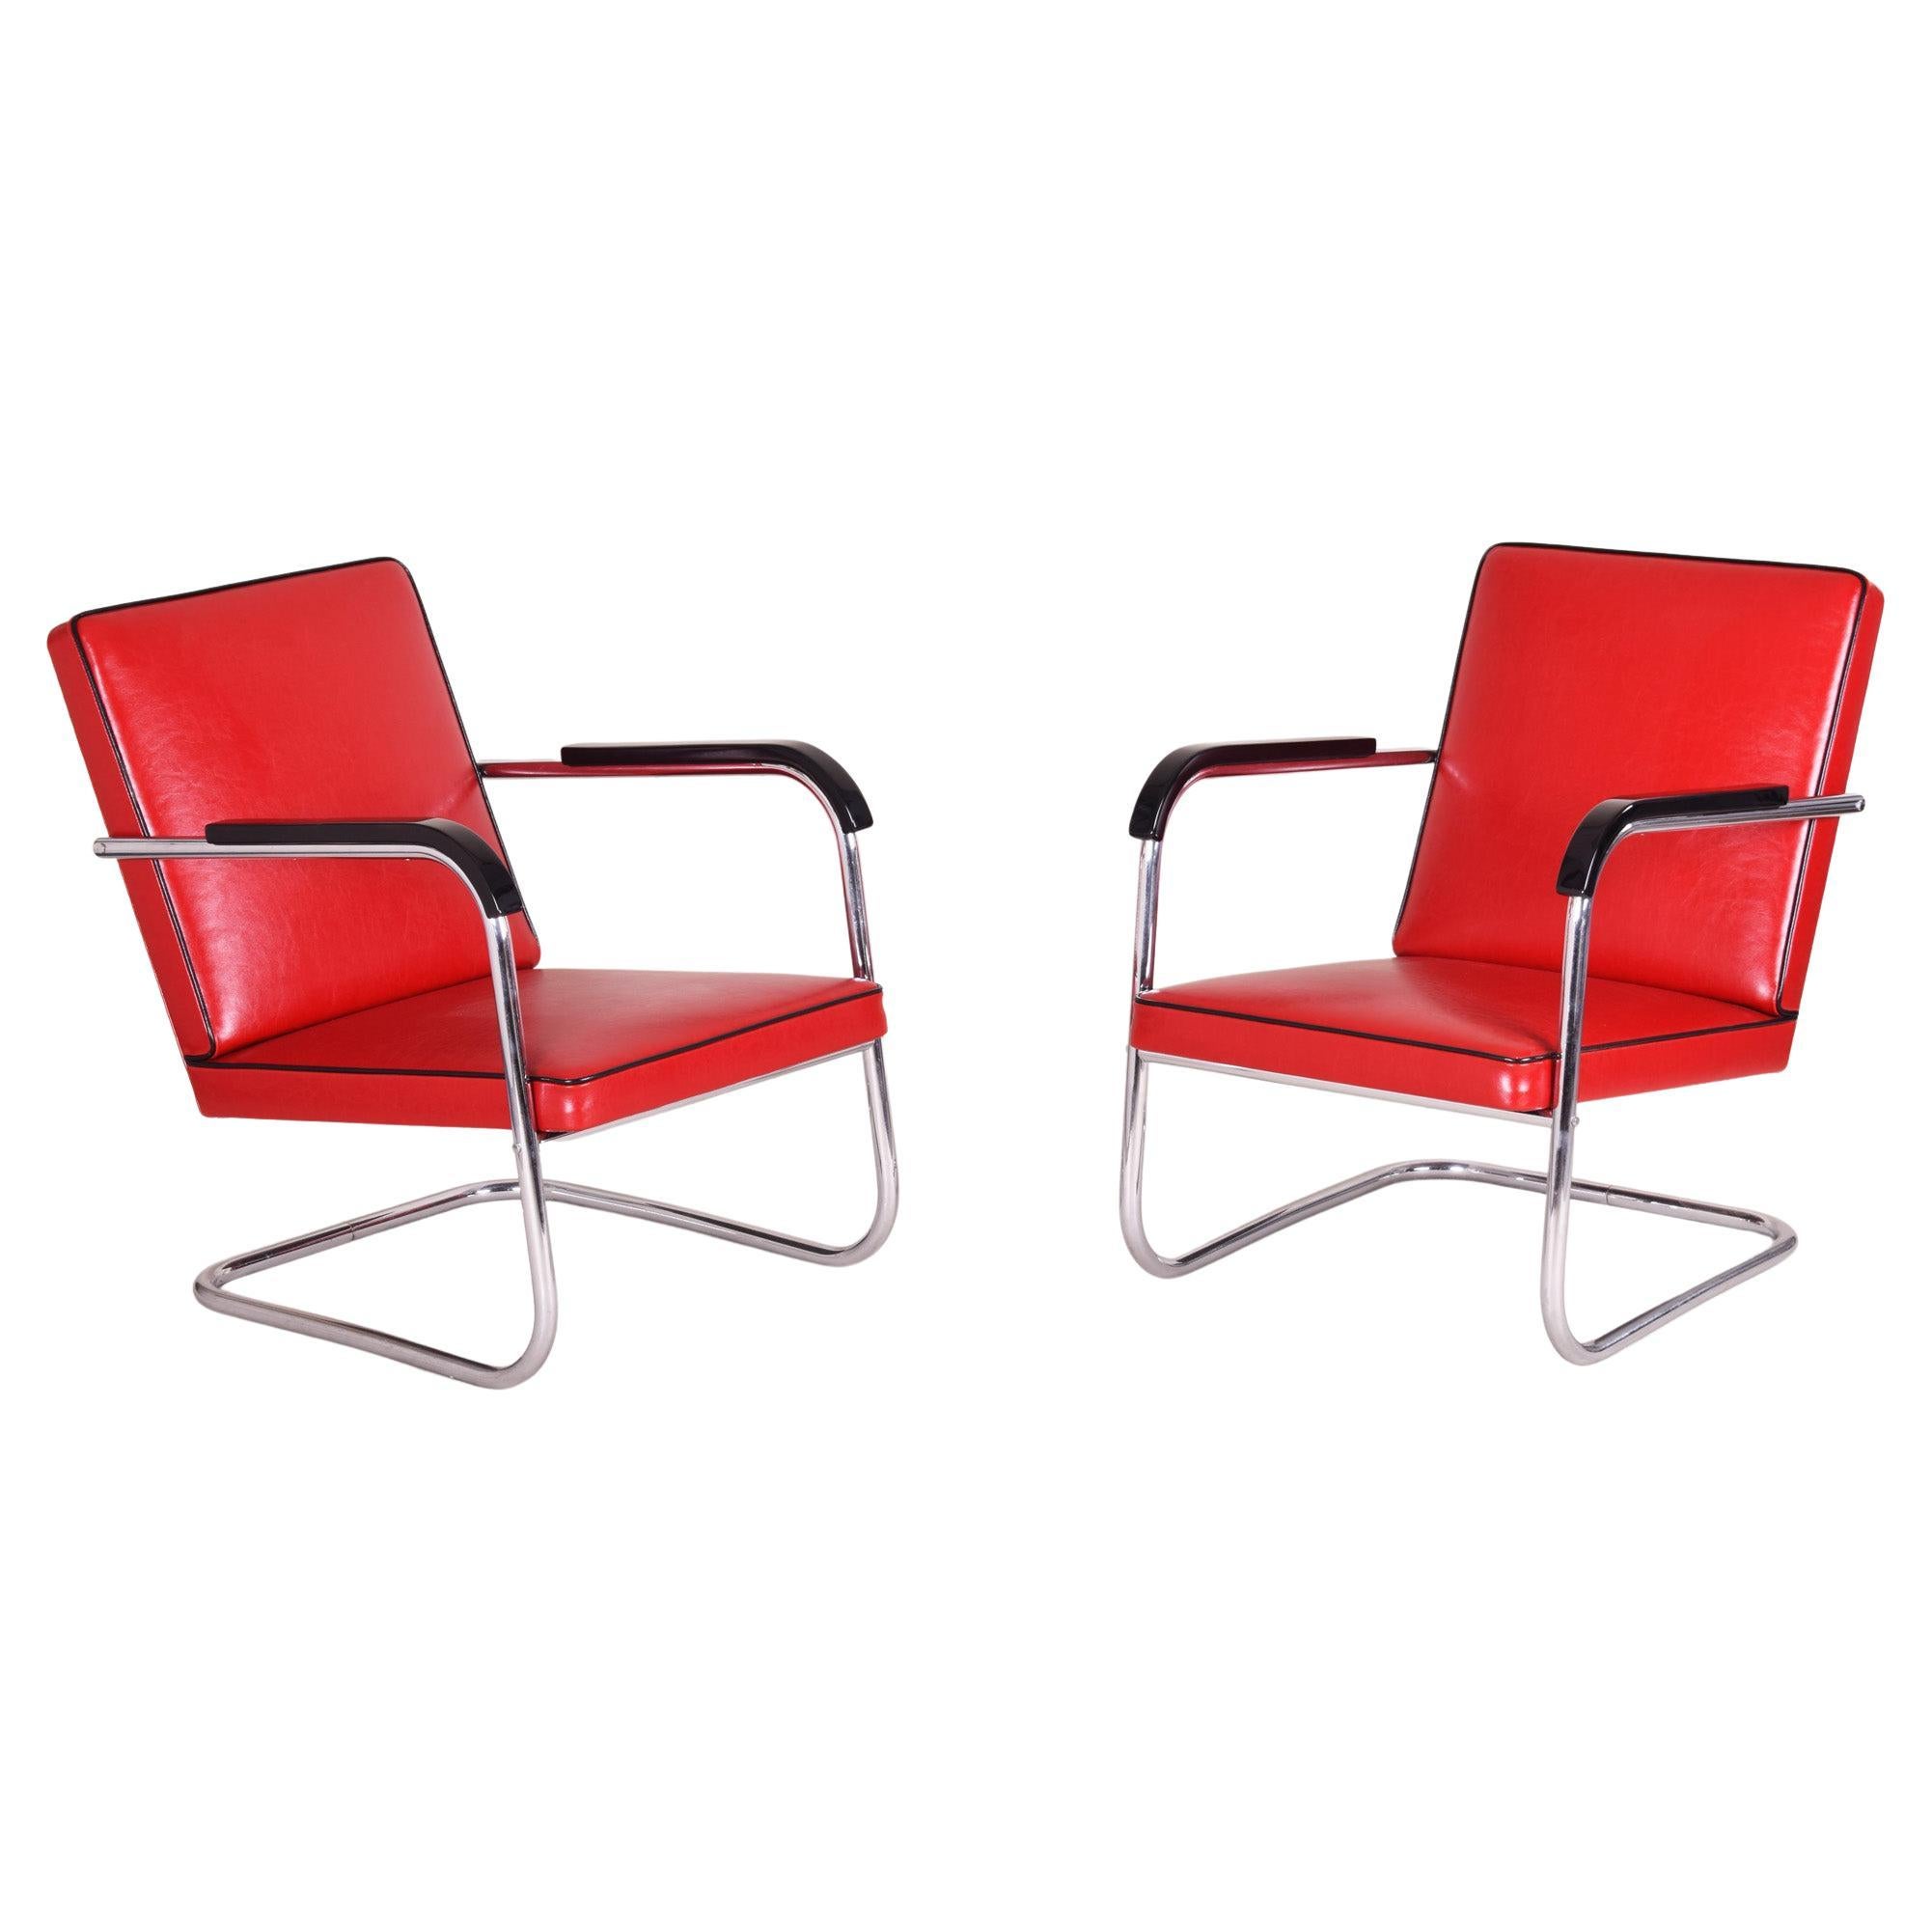 Paar rote Bauhaus-Sessel aus den 30er Jahren in Deutschland, entworfen von Anton Lorenz